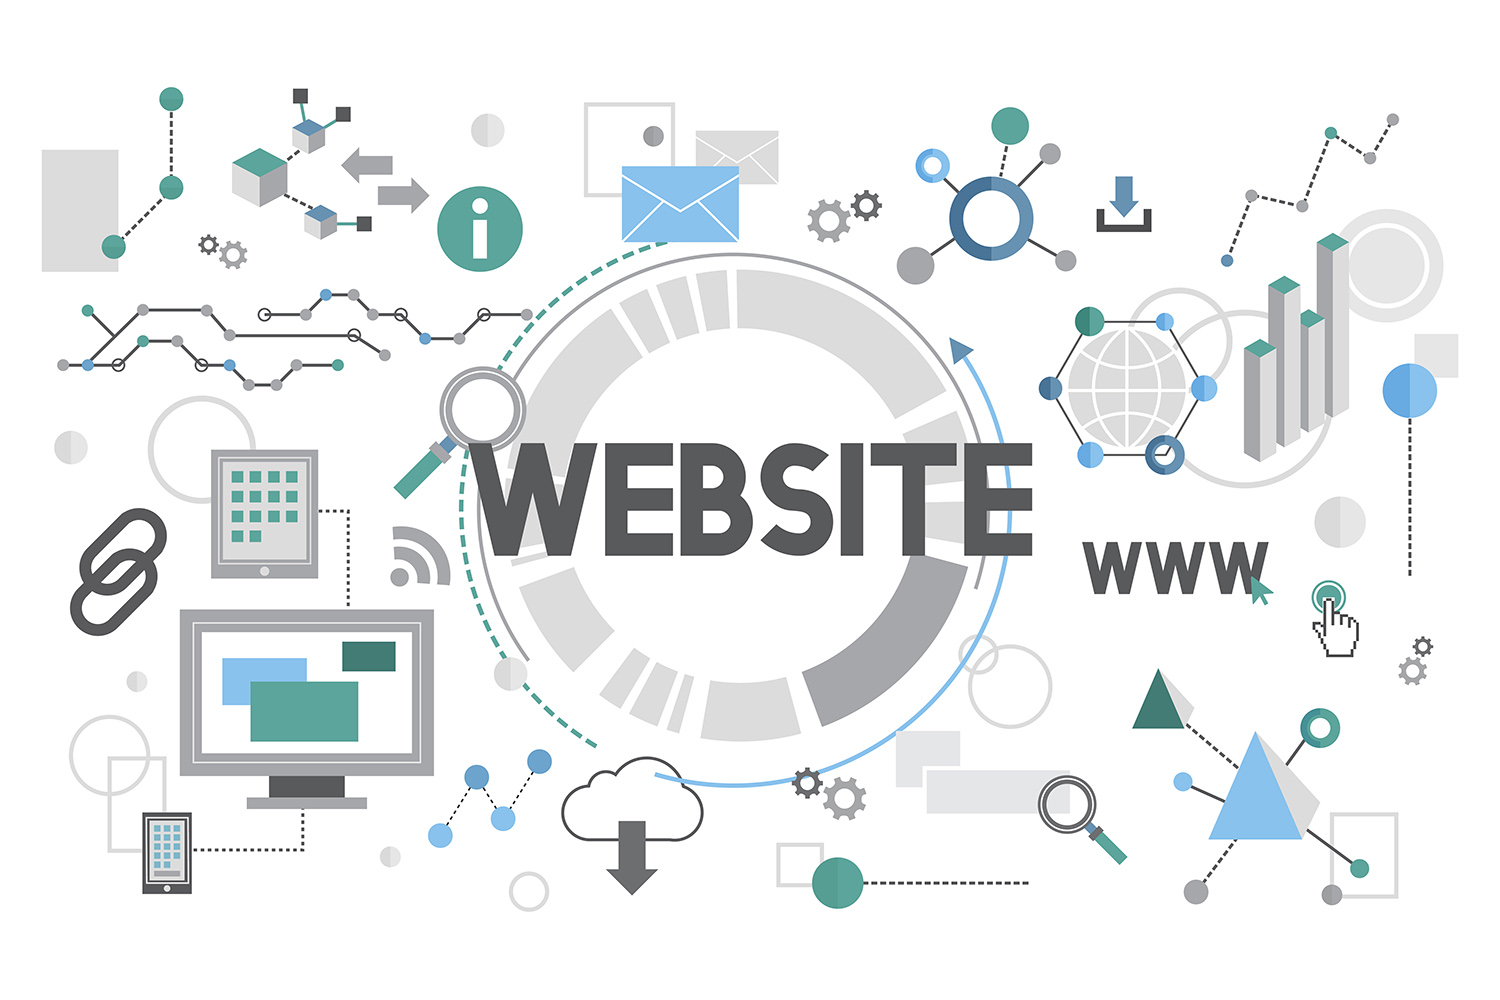 Top 5 cách phát triển website hiệu quả tối ưu hoạt động kinh doanh